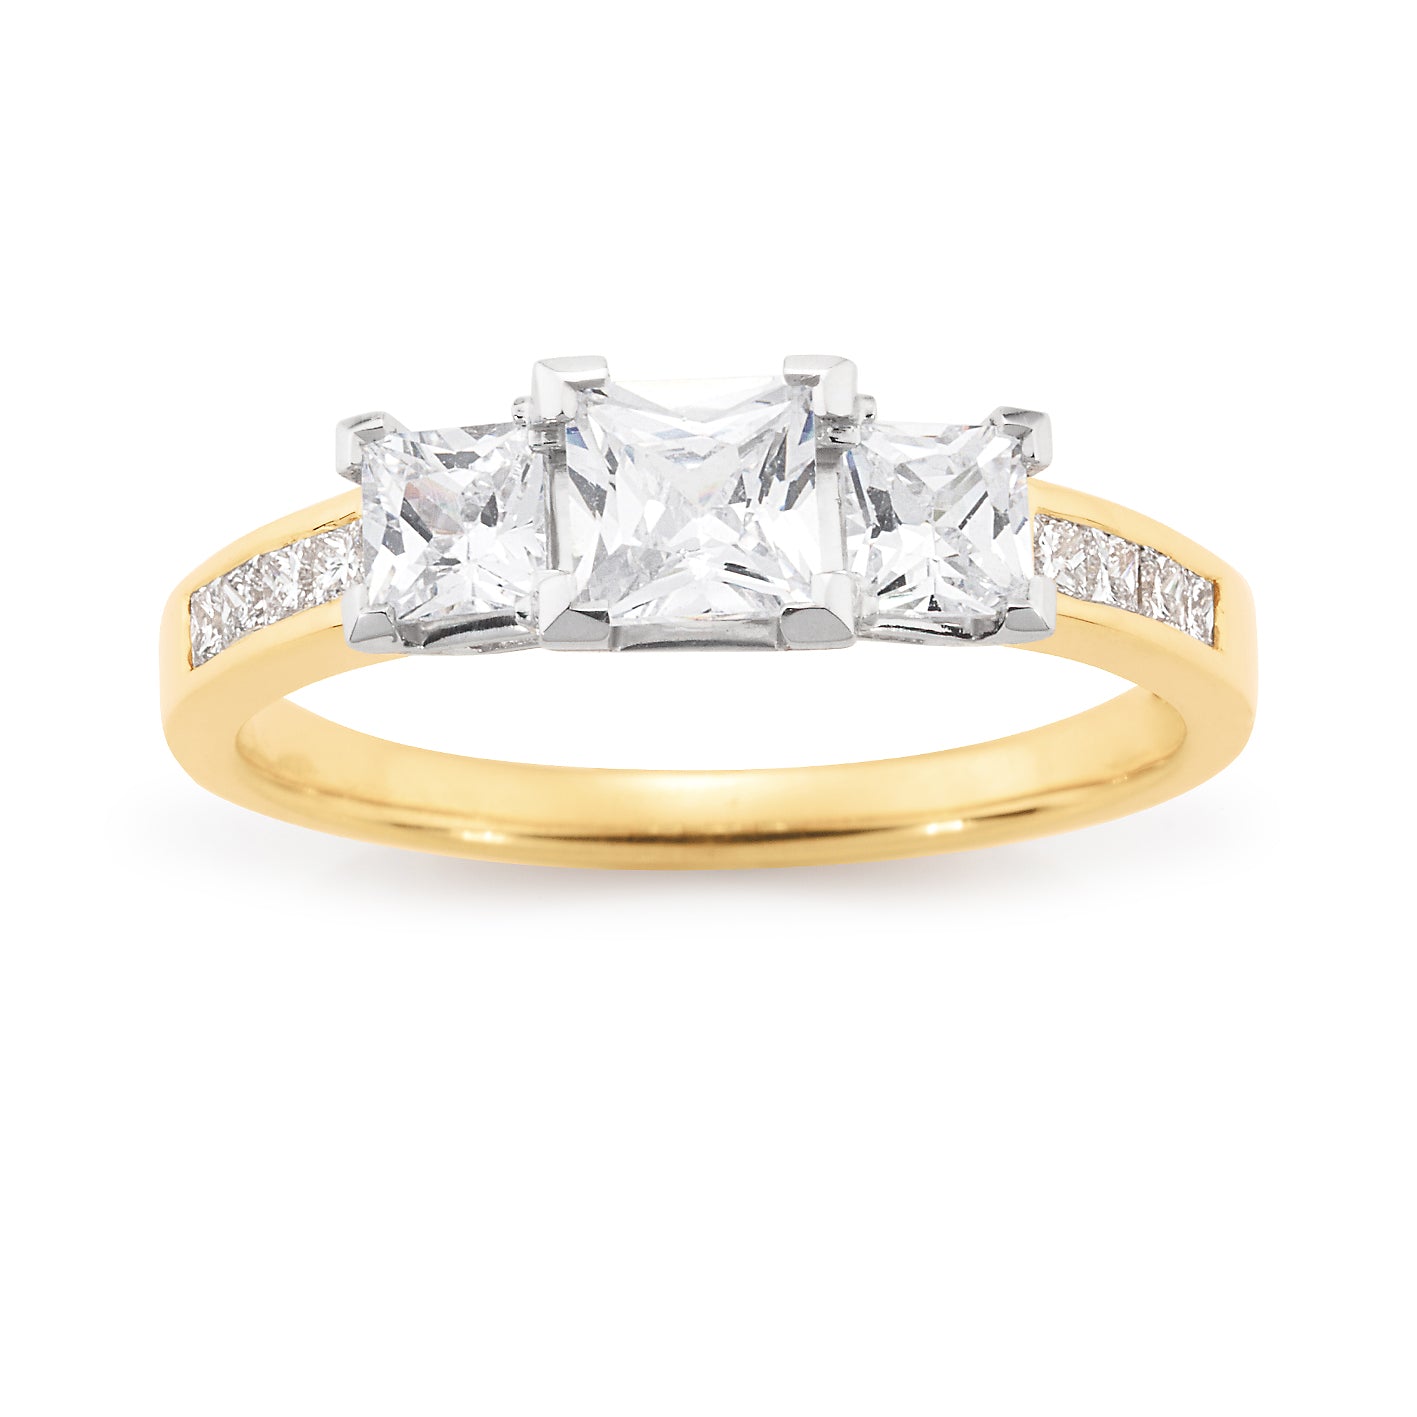 18 Carat White Gold Princess Trilogy Engagement Ring, 1.28 Carats.